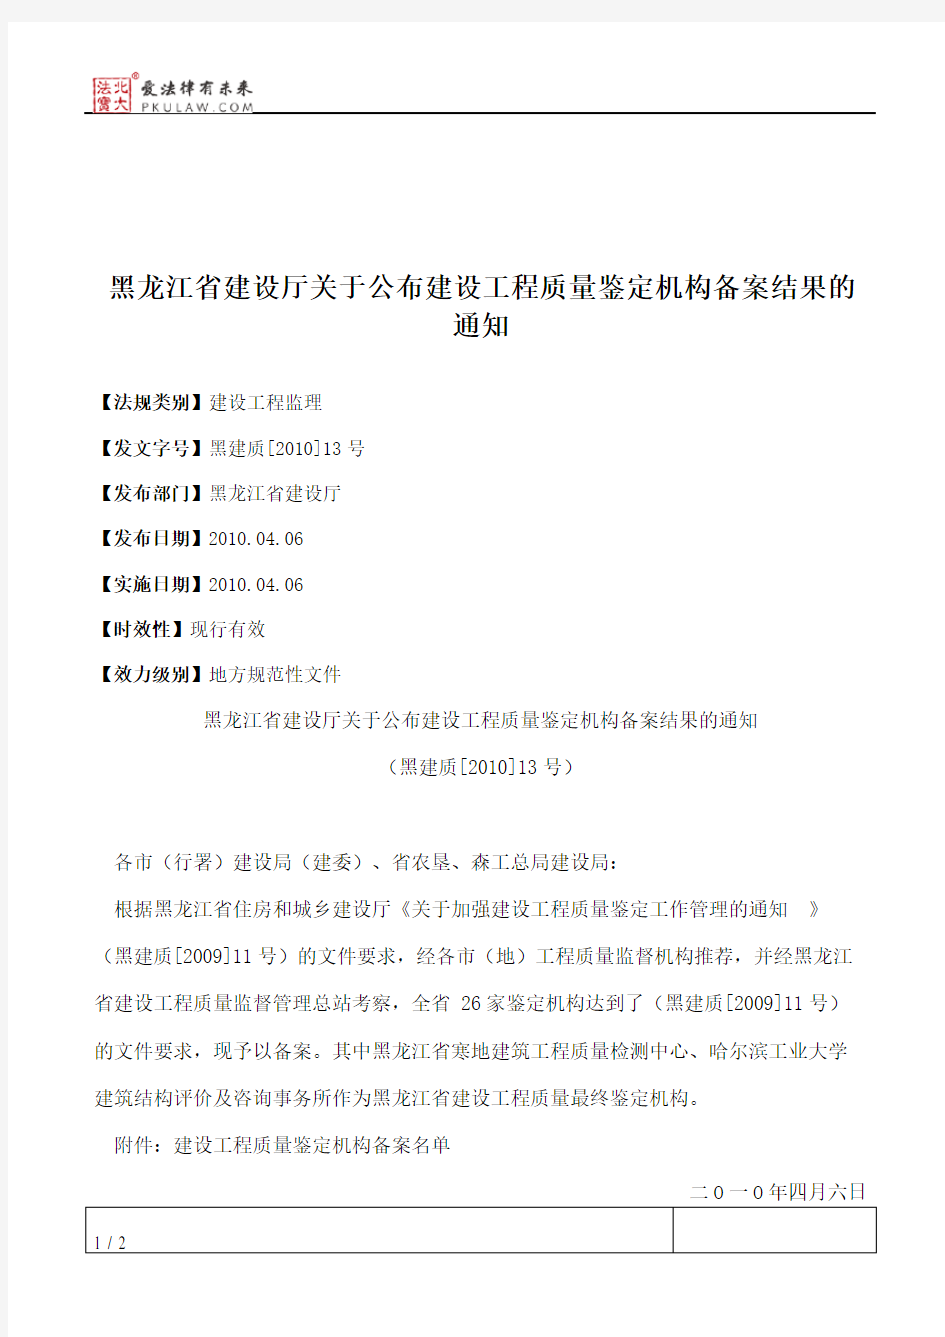 黑龙江省建设厅关于公布建设工程质量鉴定机构备案结果的通知